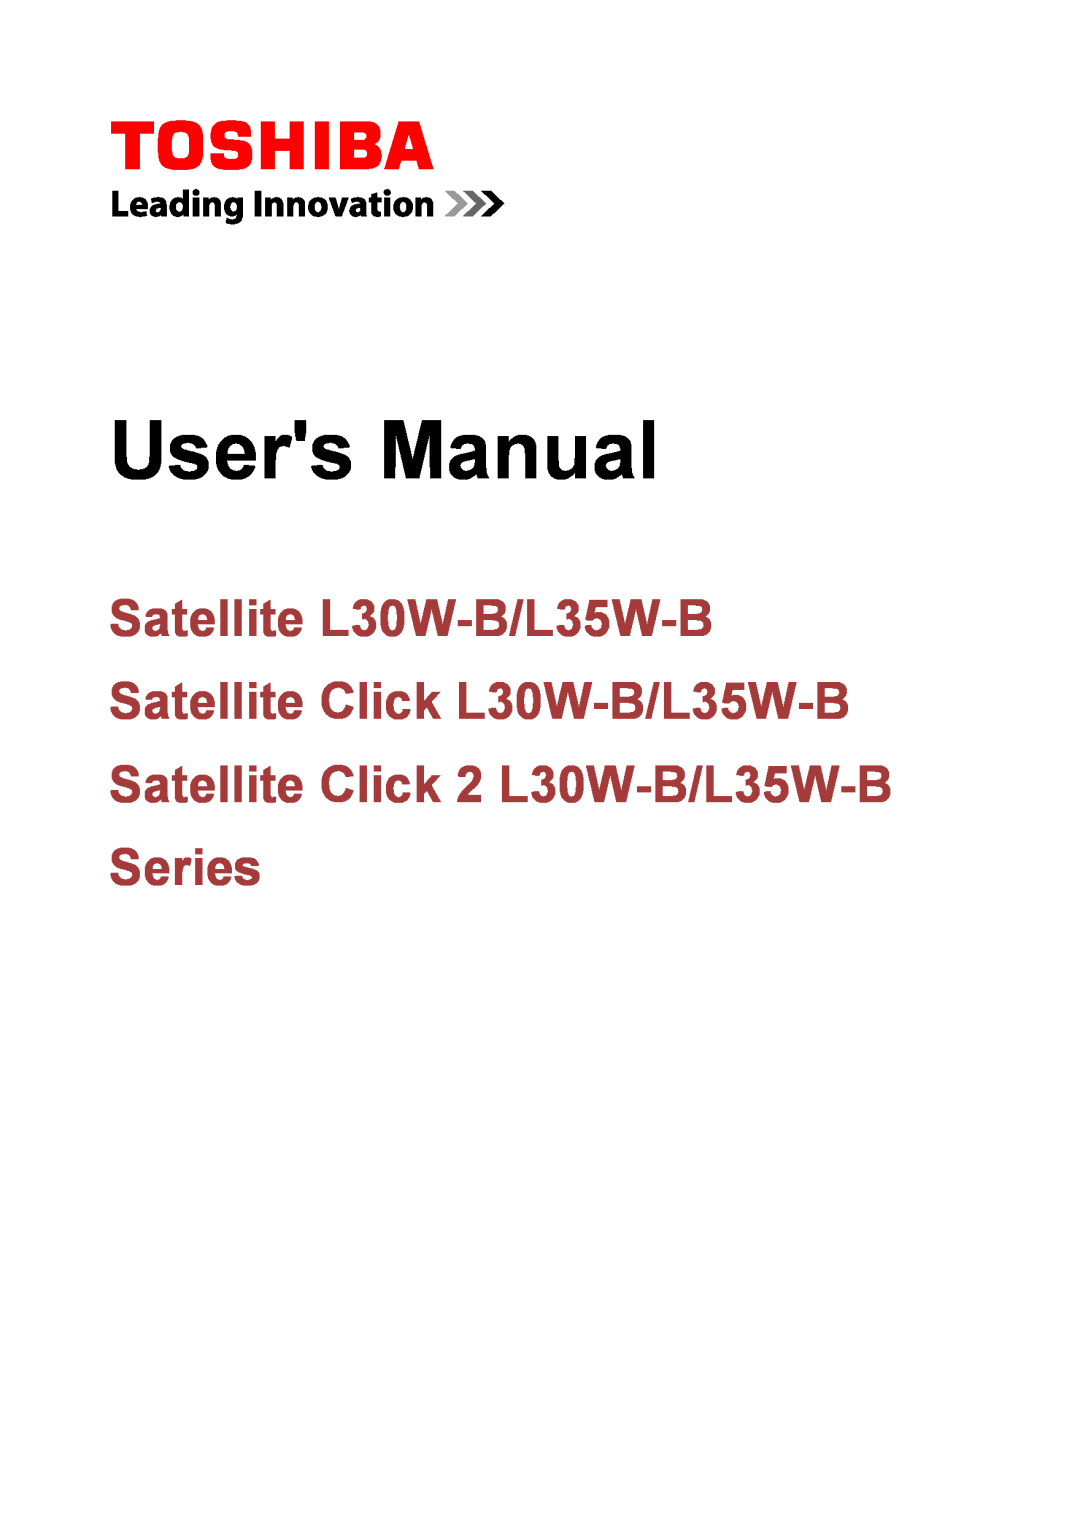 Toshiba user manual Satellite L30W-B/L35W-B Satellite Click L30W-B/L35W-B, Satellite Click 2 L30W-B/L35W-B Series 